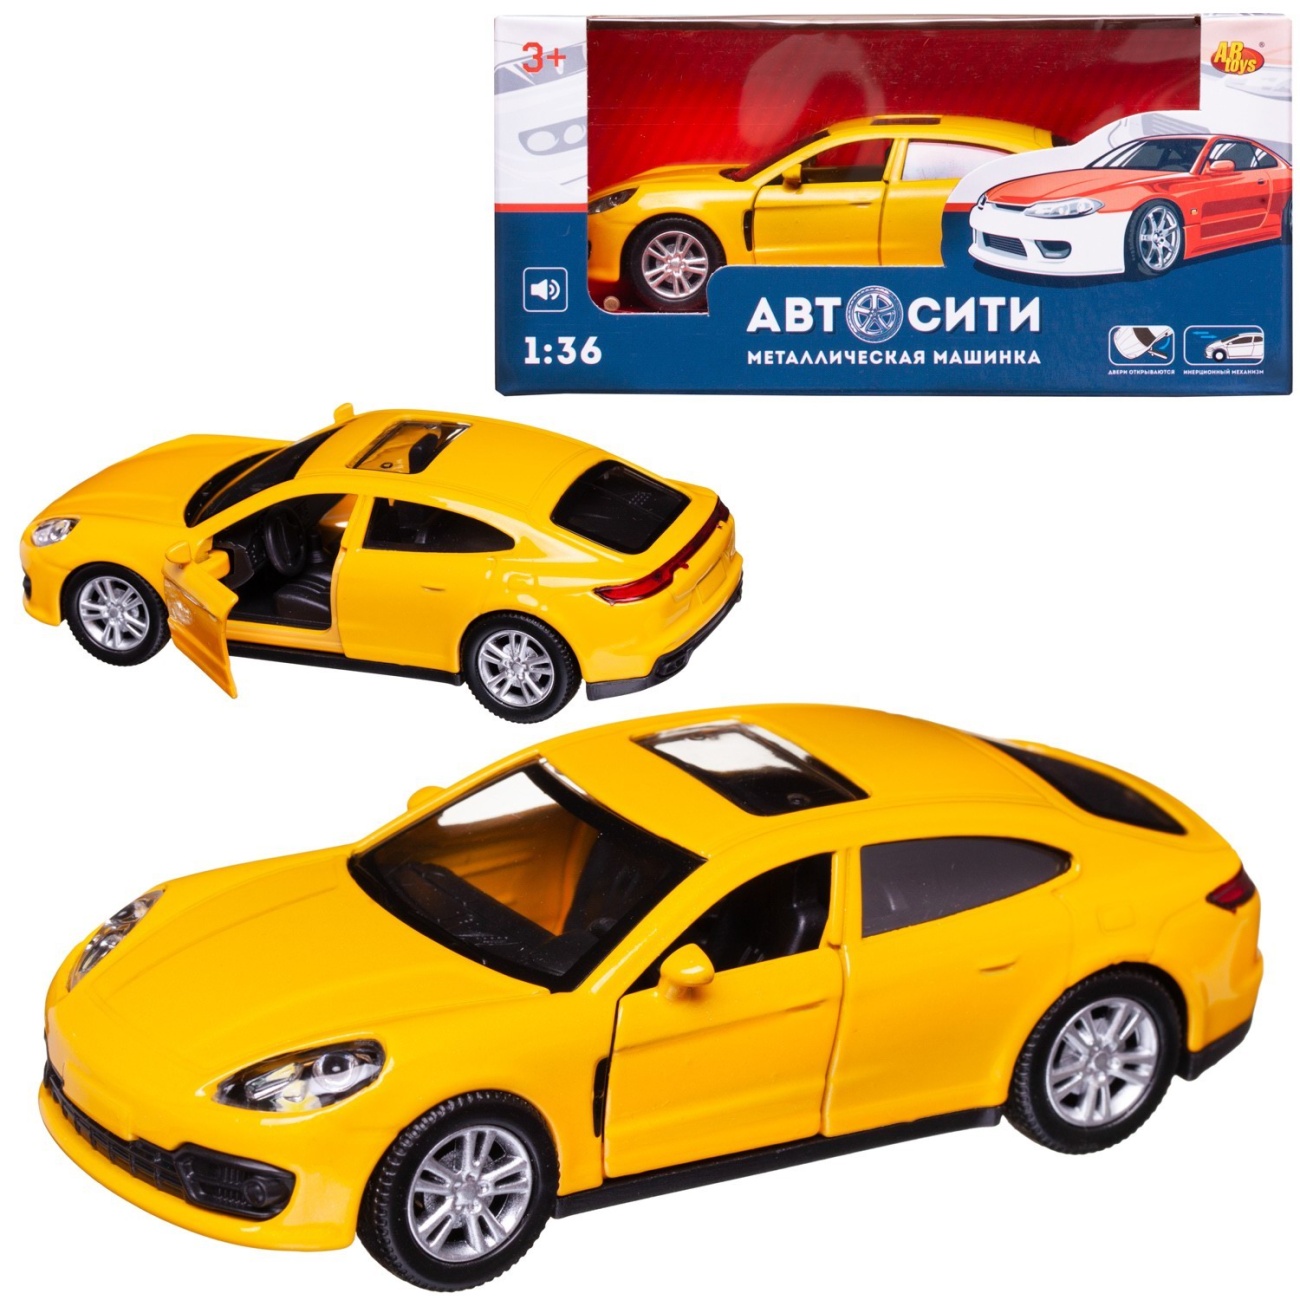 Машинка металл Abtoys АвтоСити 1:36 Седан купе инерция, двери откр., желтый свет/звук C-00523/желтый